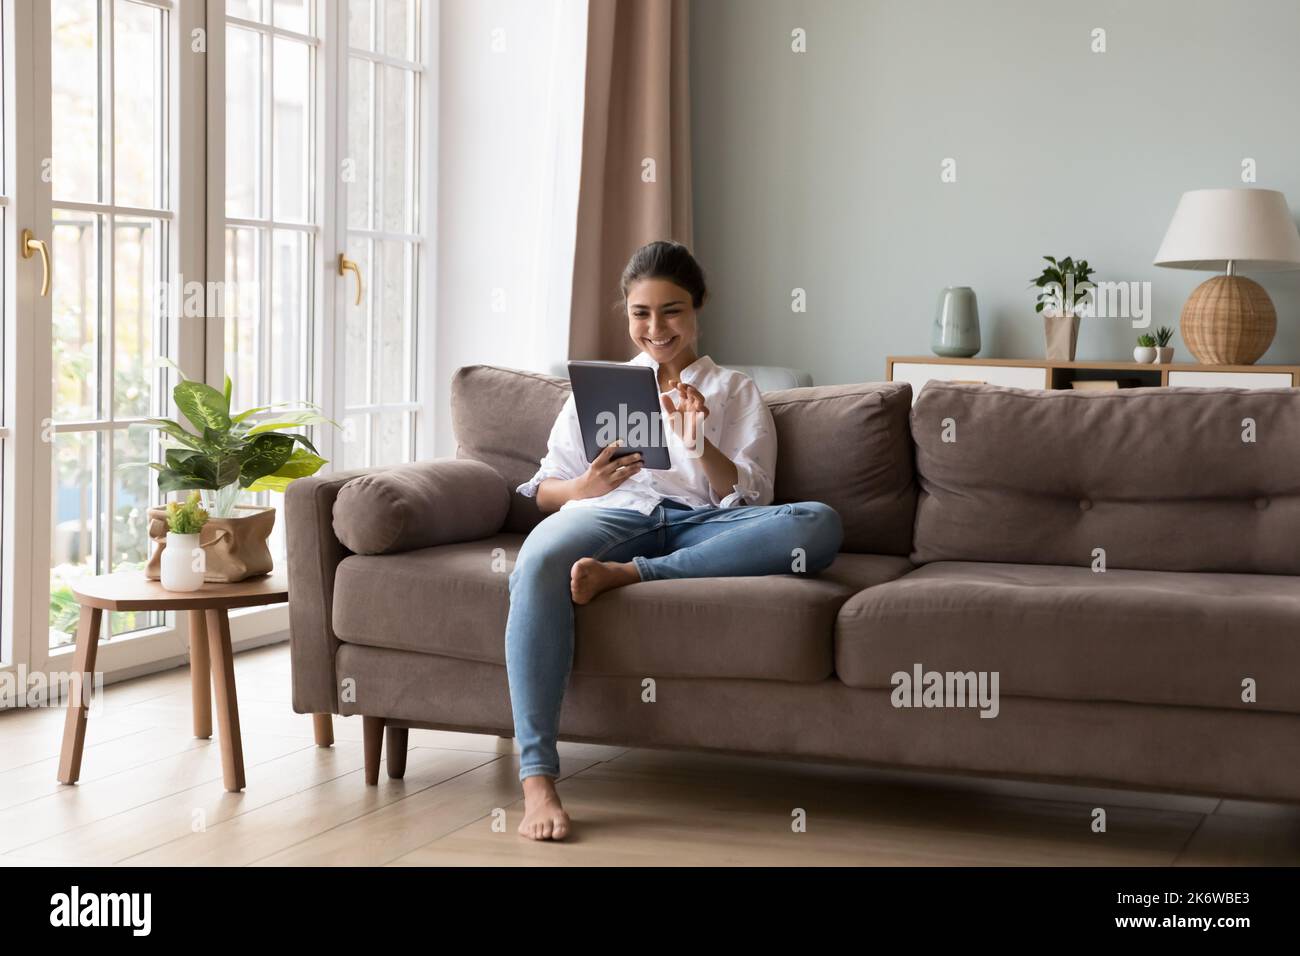 Jolie femme indienne utilisant une tablette numérique assise sur un canapé Banque D'Images